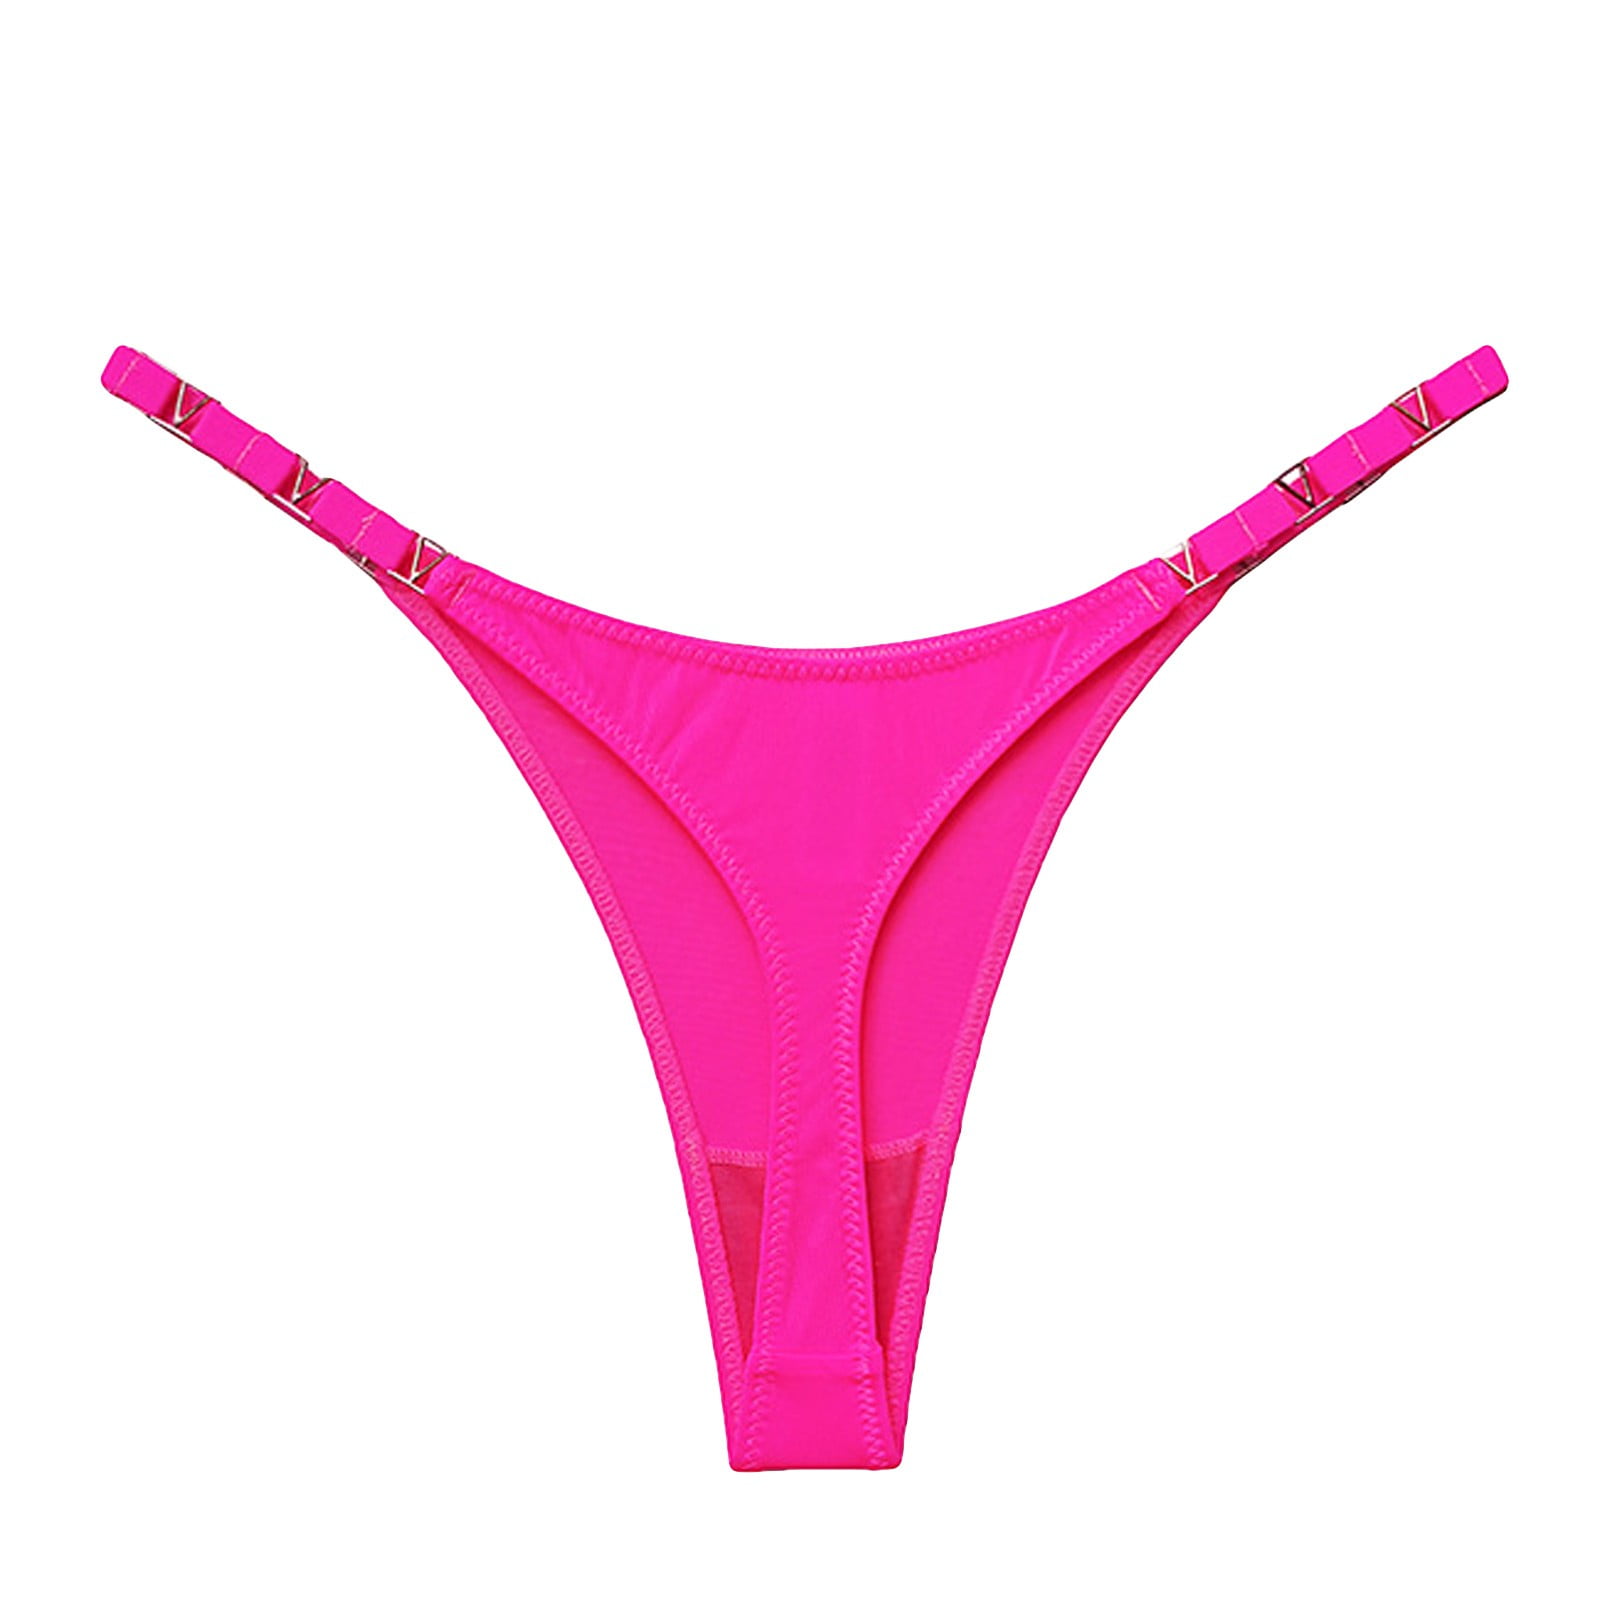 Kddylitq G String Underwear for Women Underwear Soft Seamless Low Rise  Briefs Hot Pink XL